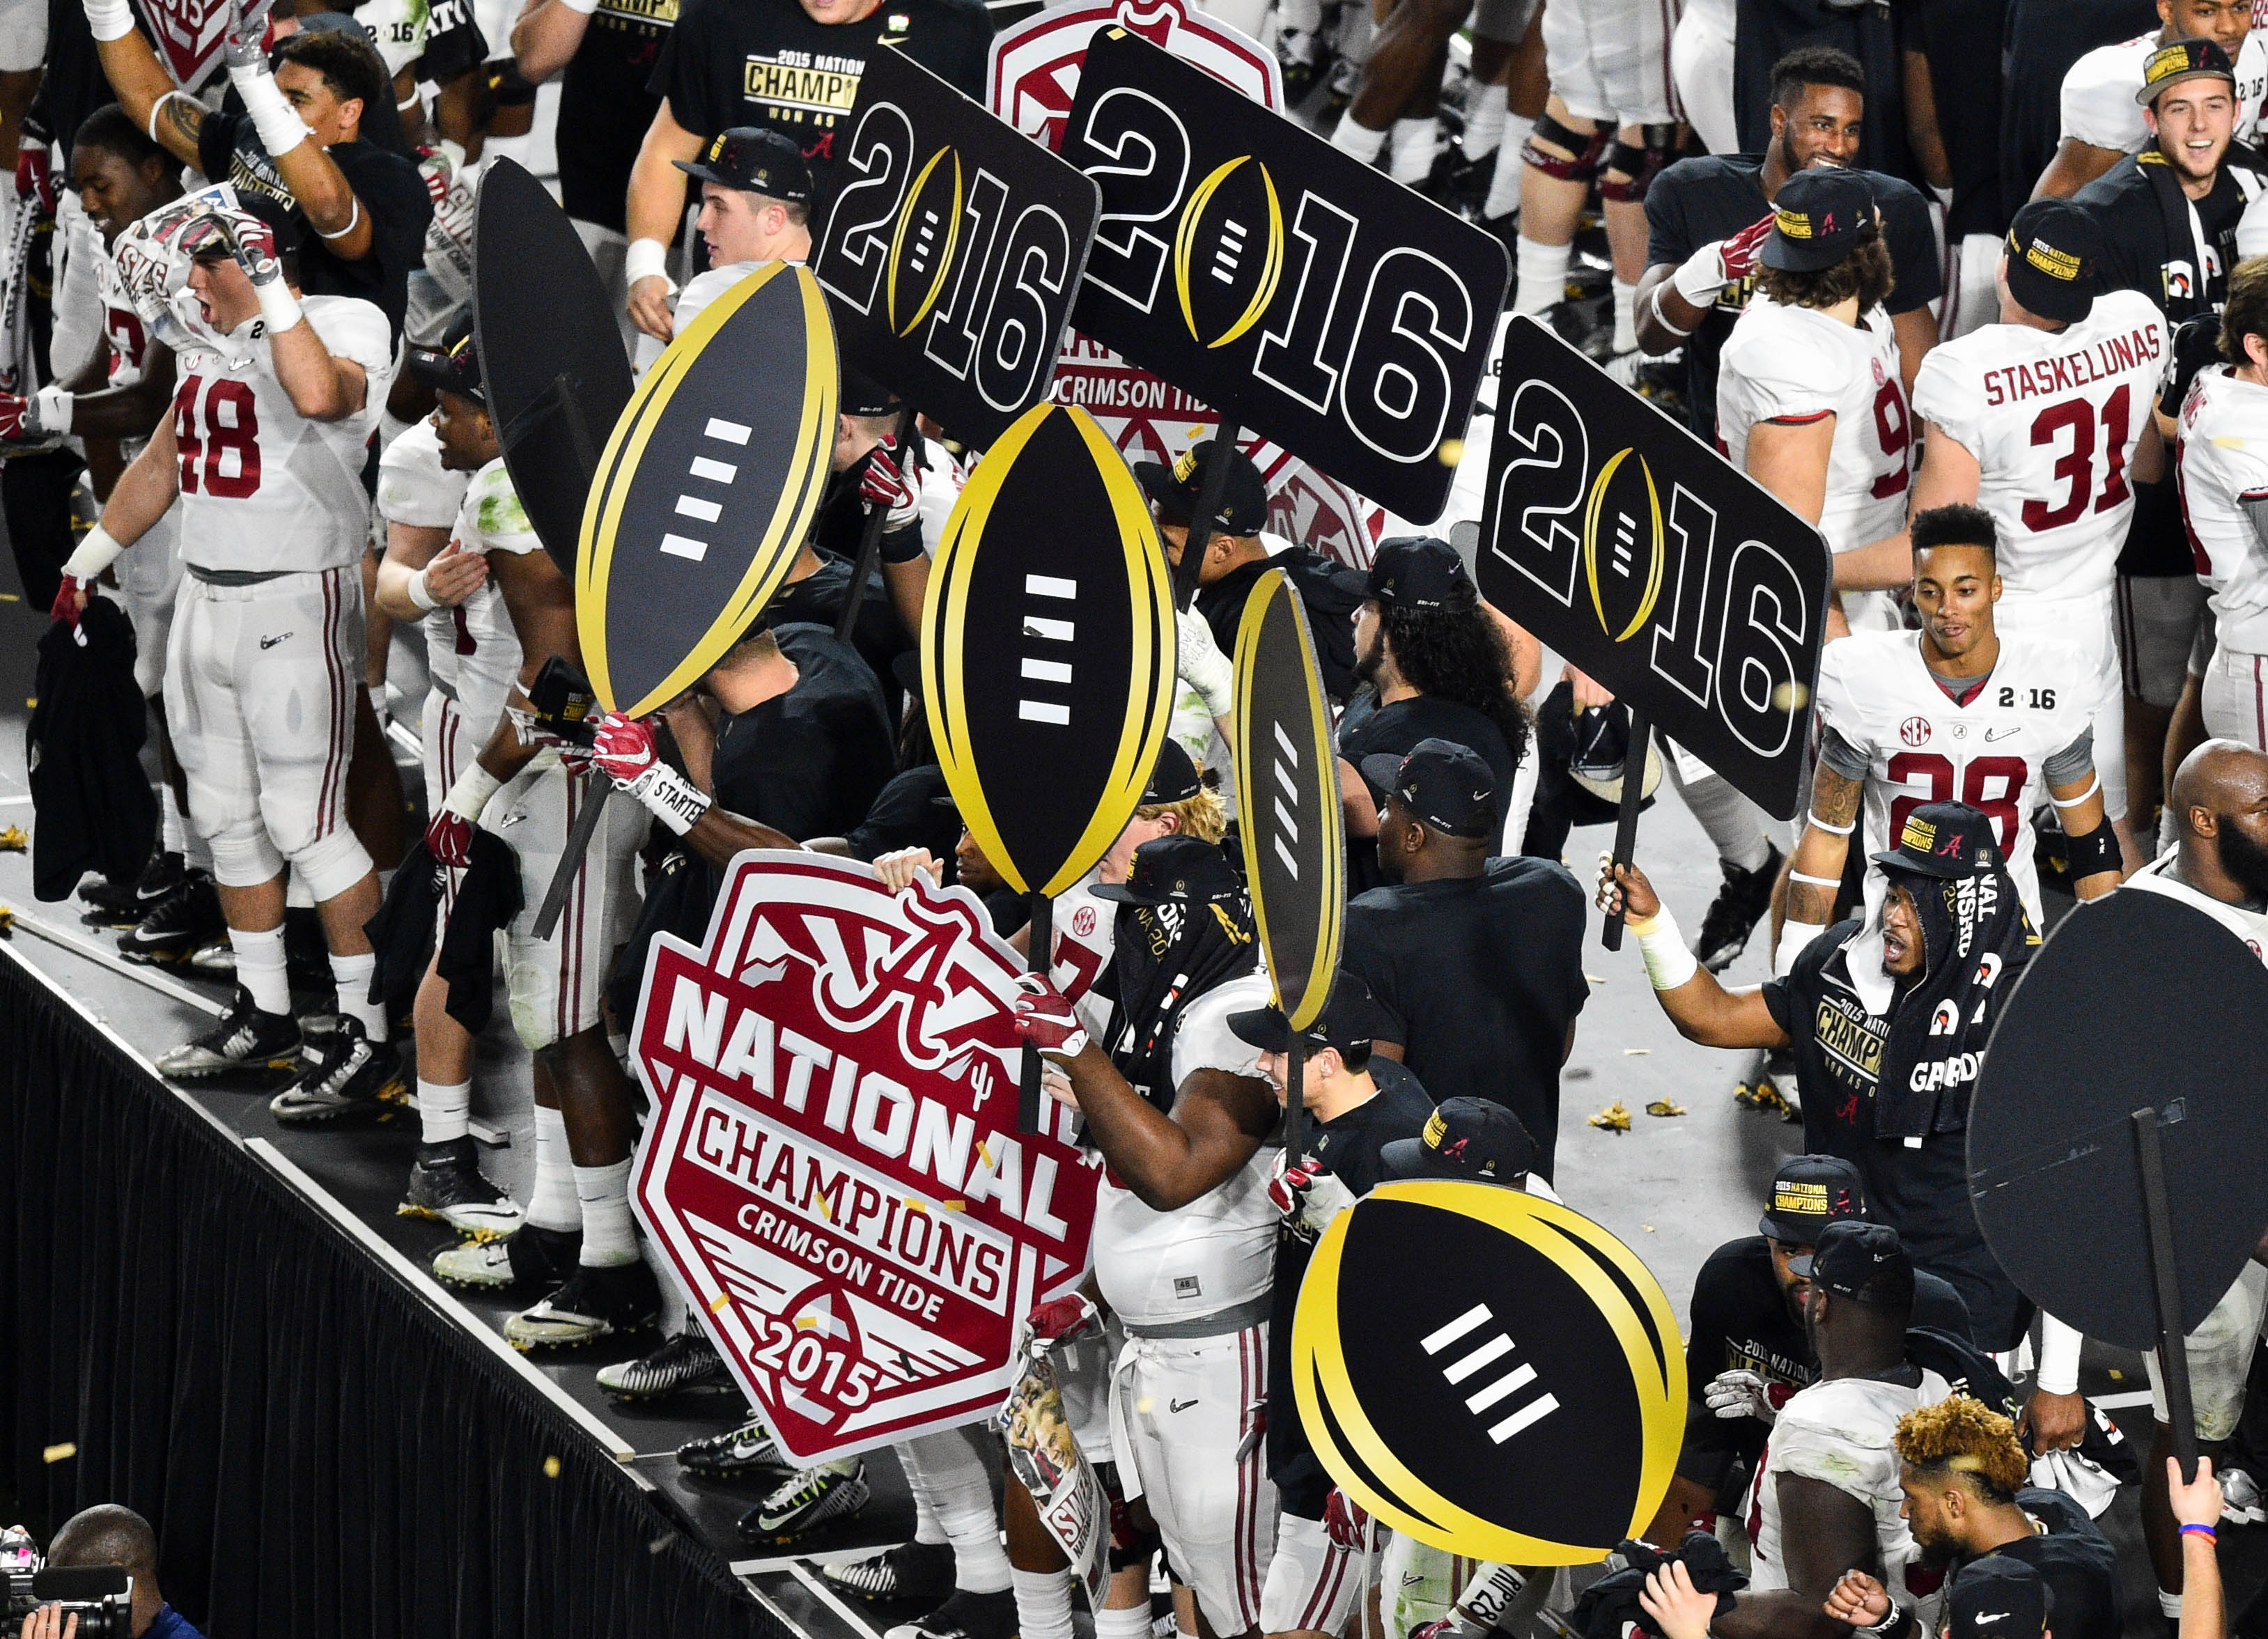 14 amazing photos from Alabama’s national championship celebration